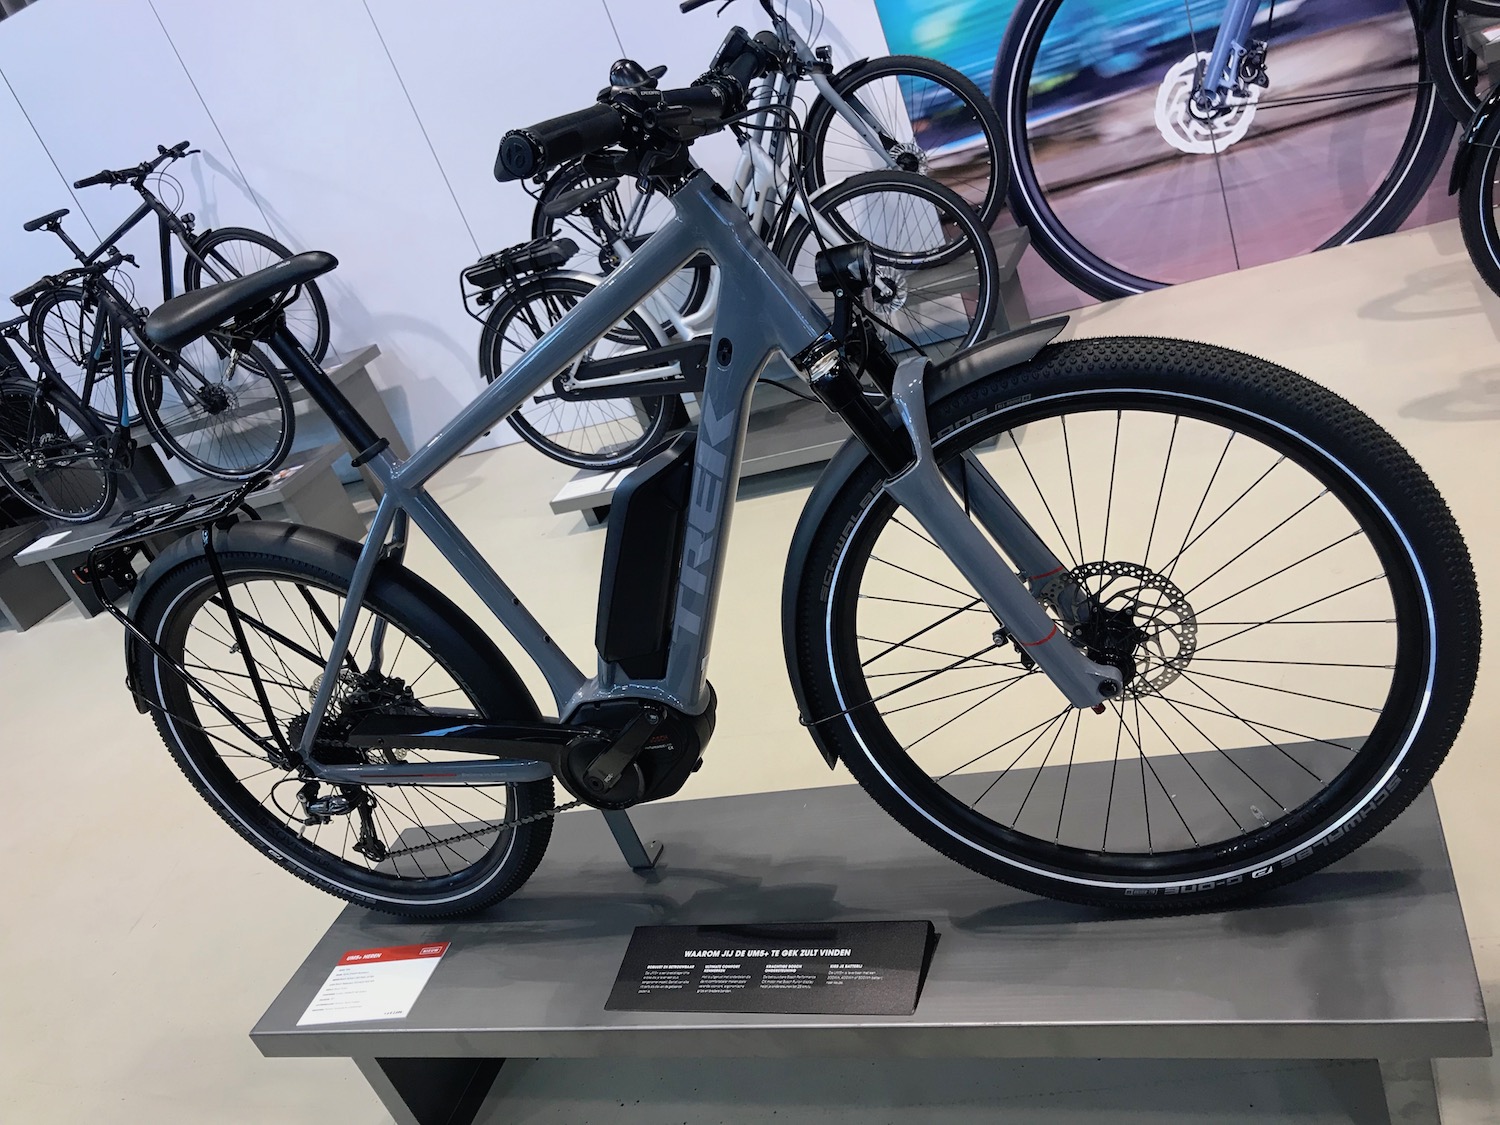 Overweldigen haag draad TREK voert productiecapaciteit e-bikes verder op - NieuwsFiets Media &  Events